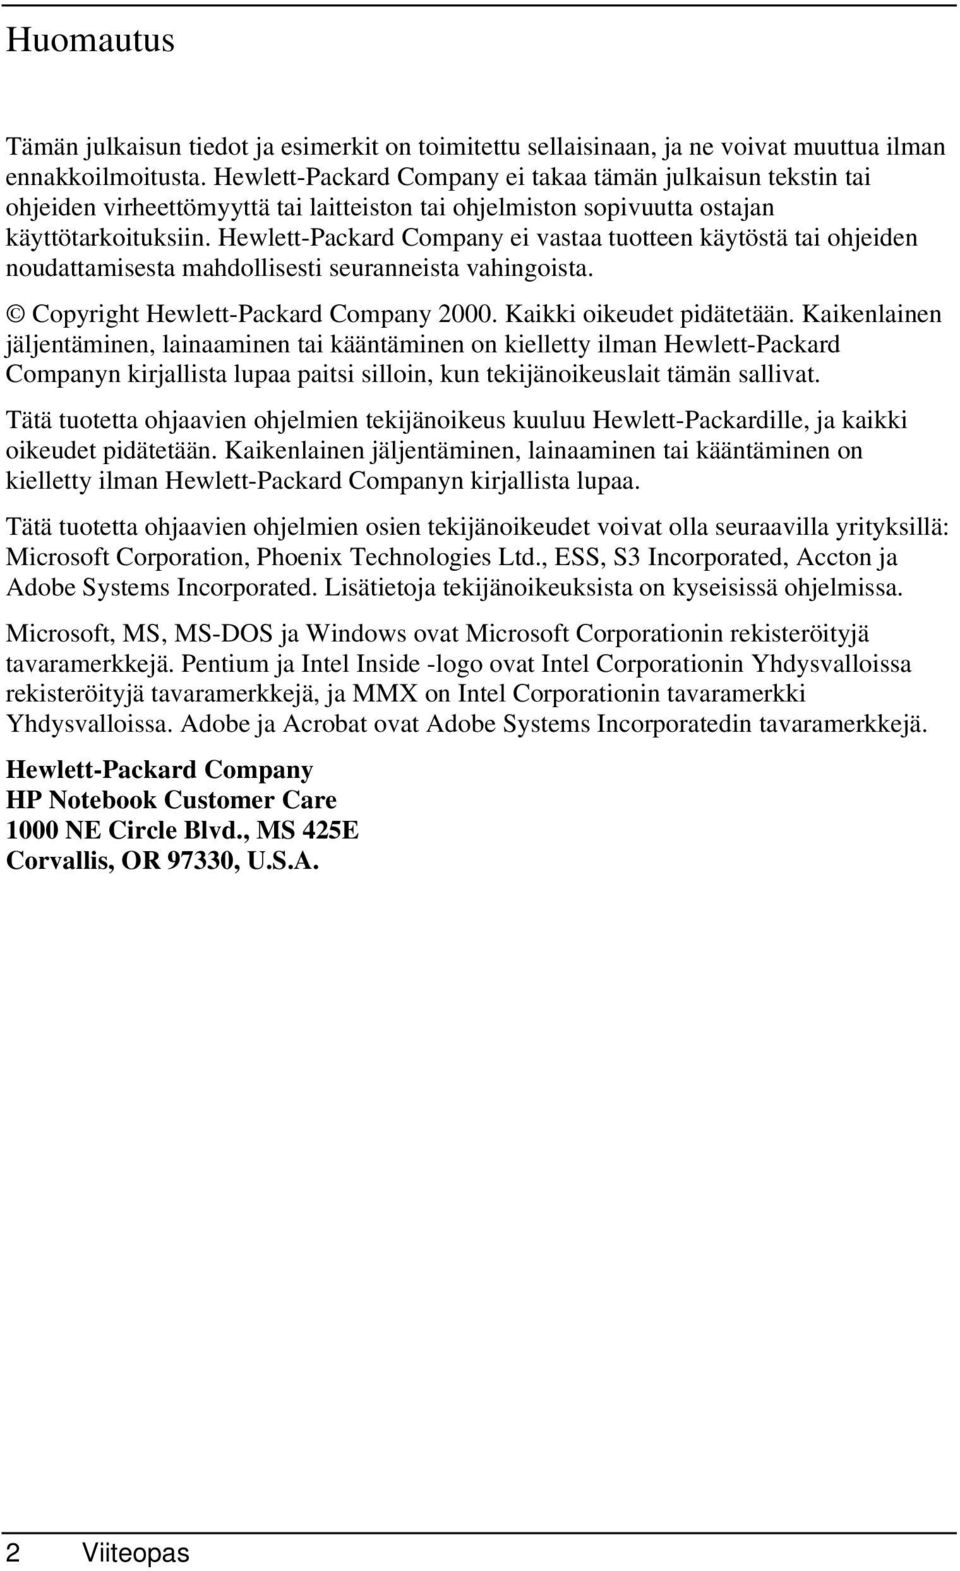 Hewlett-Packard Company ei vastaa tuotteen käytöstä tai ohjeiden noudattamisesta mahdollisesti seuranneista vahingoista. Copyright Hewlett-Packard Company 2000. Kaikki oikeudet pidätetään.